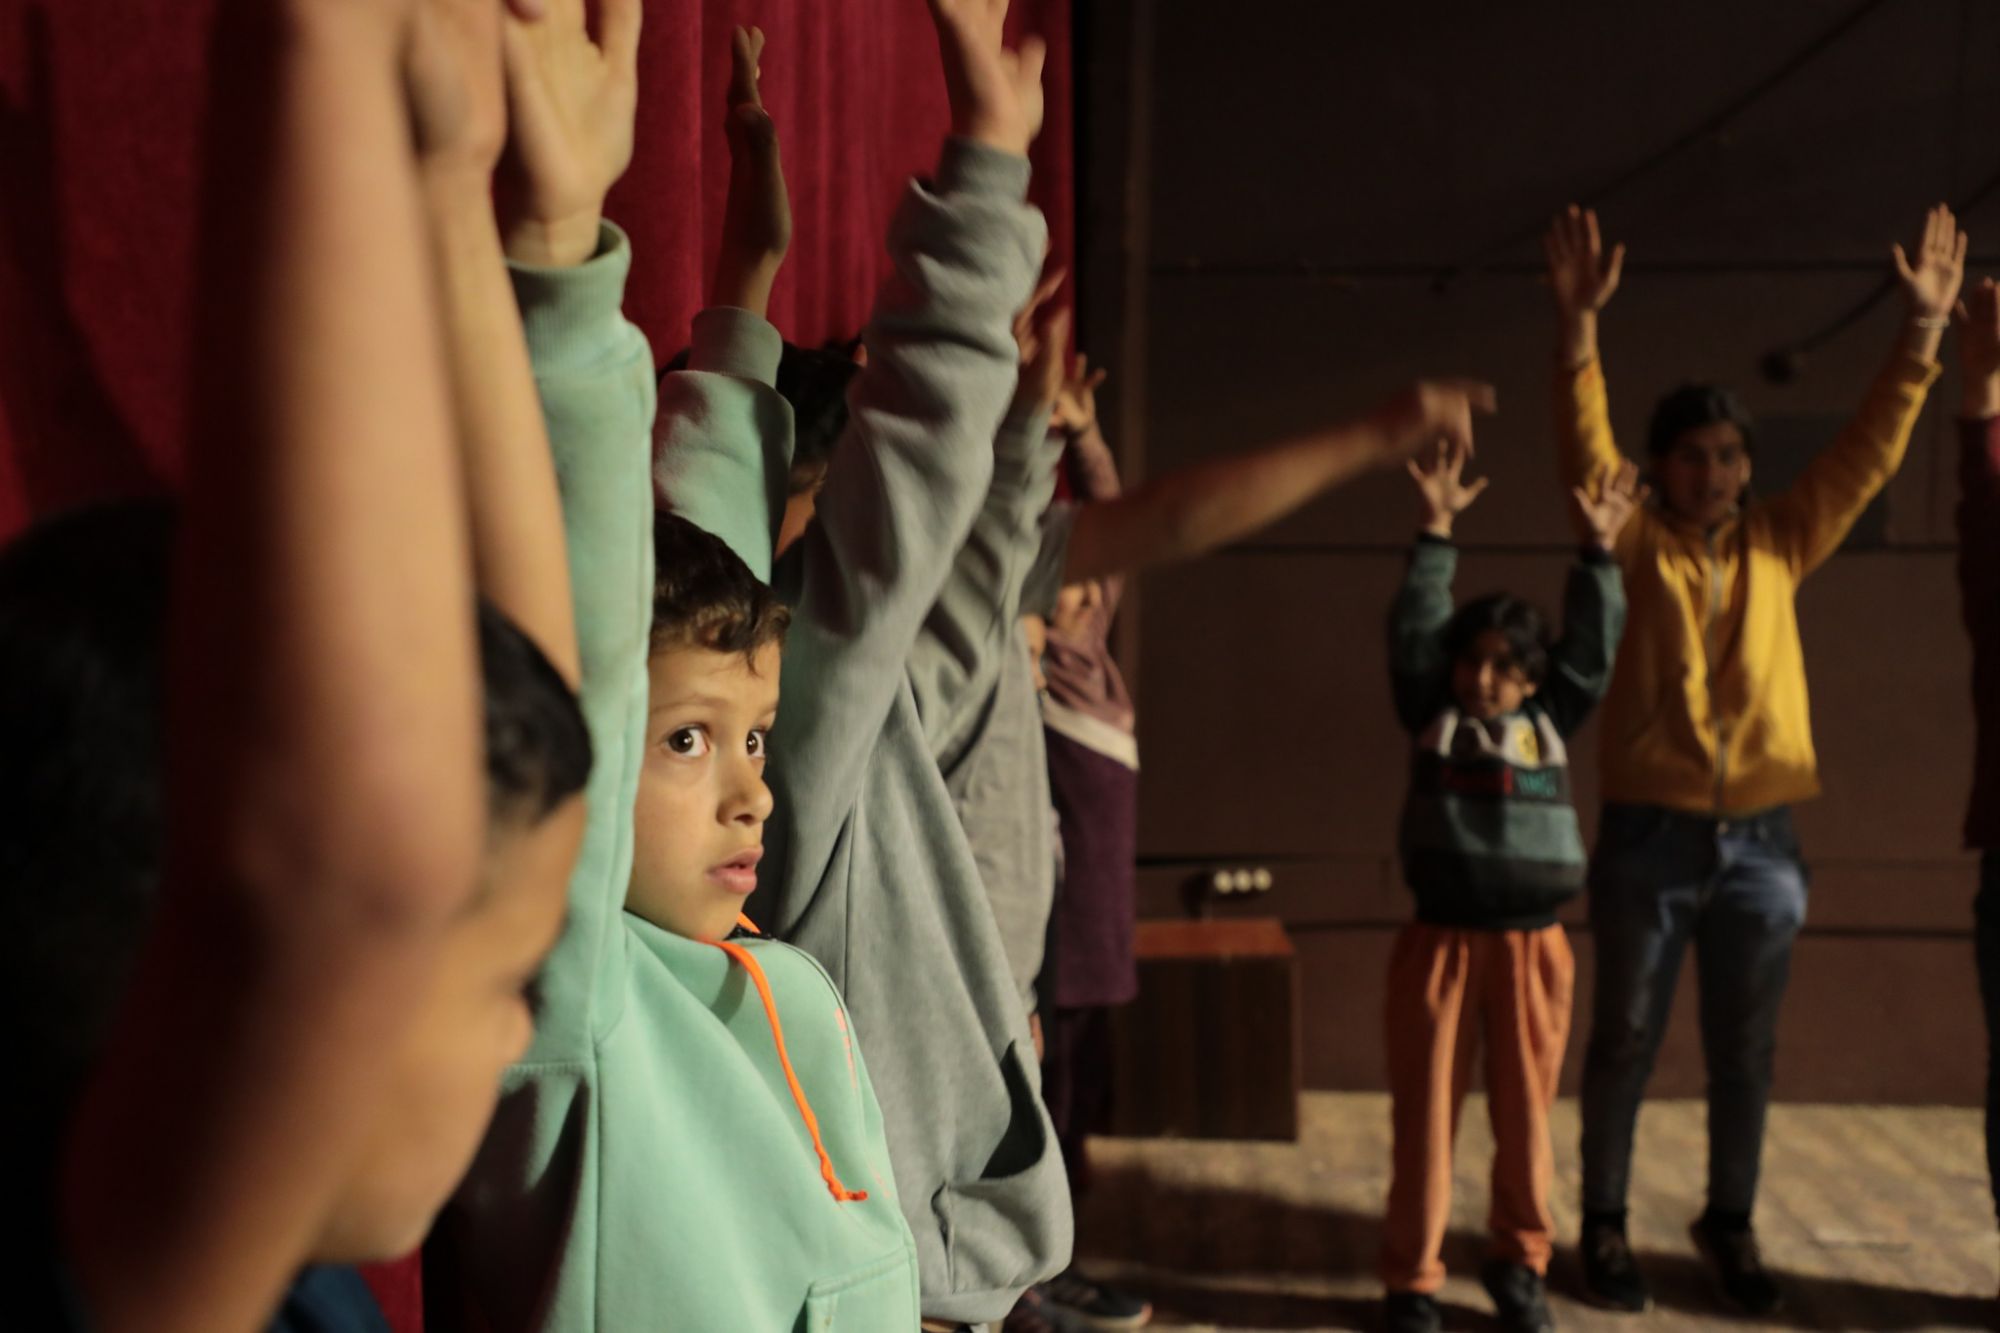 D8AAD8AFD8B1D98AD8A8D8A7D8AAD984D984D8A3D8B7D981D8A7D984D988D8A7D984D8B4D8A8D8A7D8A8D8A7D984D986D8A7D8B2D8ADD98AD986D985D986D8A7D984D8ADD8B1D8A8D981D98AD984D8A8D986D8A7D986285298241177300493730178 جمعية تيرو للفنون تنظم تدريبات للأطفال النازحين من الحرب في المسرح الوطني اللبناني صور